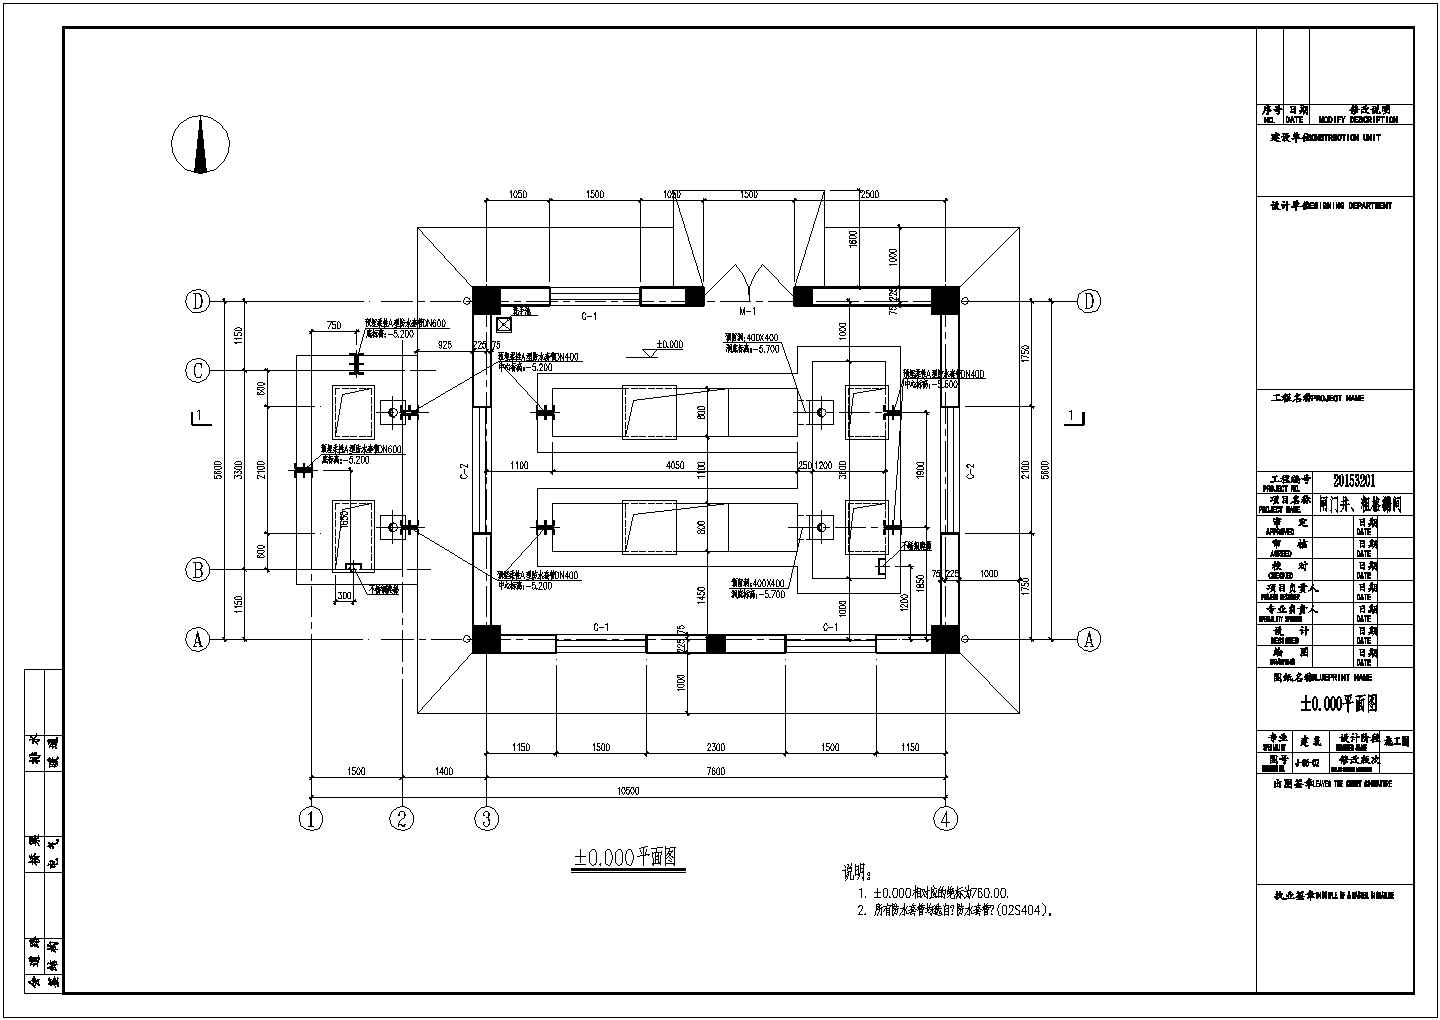 污水处理厂闸门井及粗格栅池建筑结构施工图